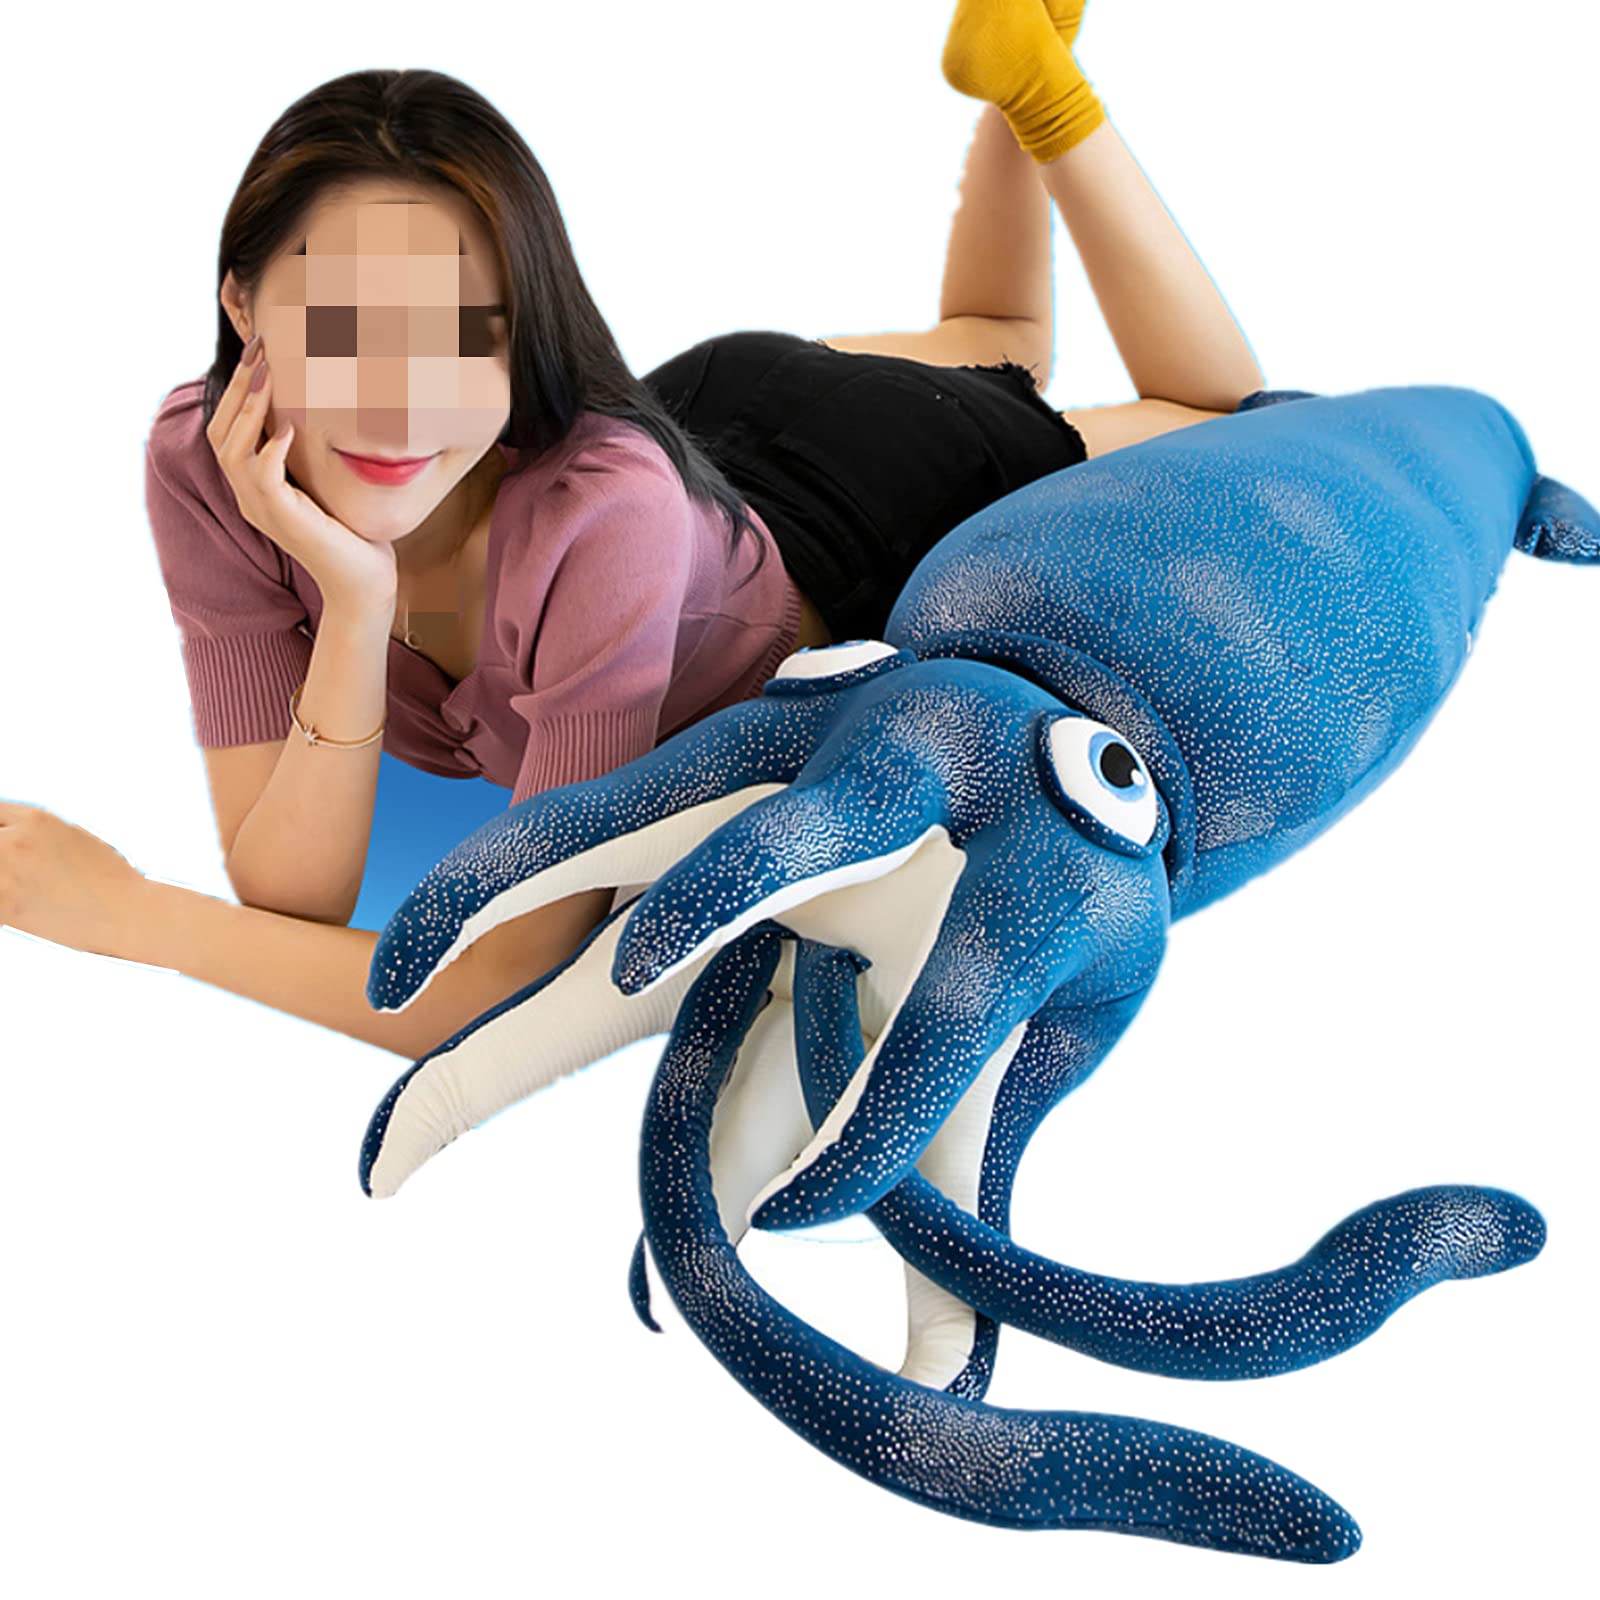 giant squid toy